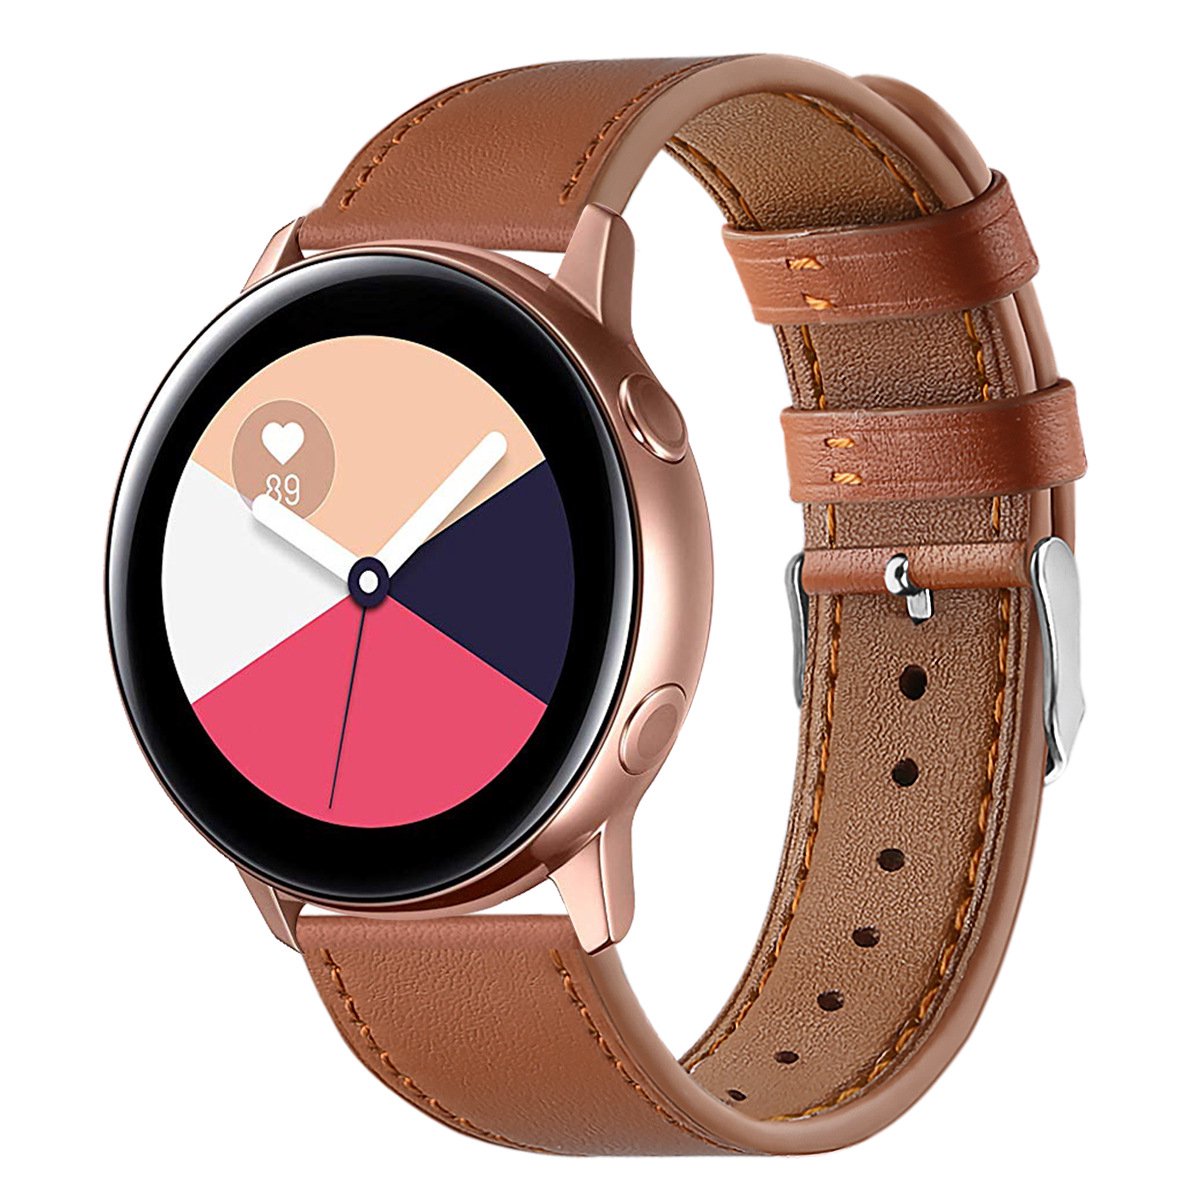 Horlogebandjes - Voor Samsung Galaxy Watch Active smartwatch - Eerste laag rundleer - Ronde staart - Echt lederen horlogeband